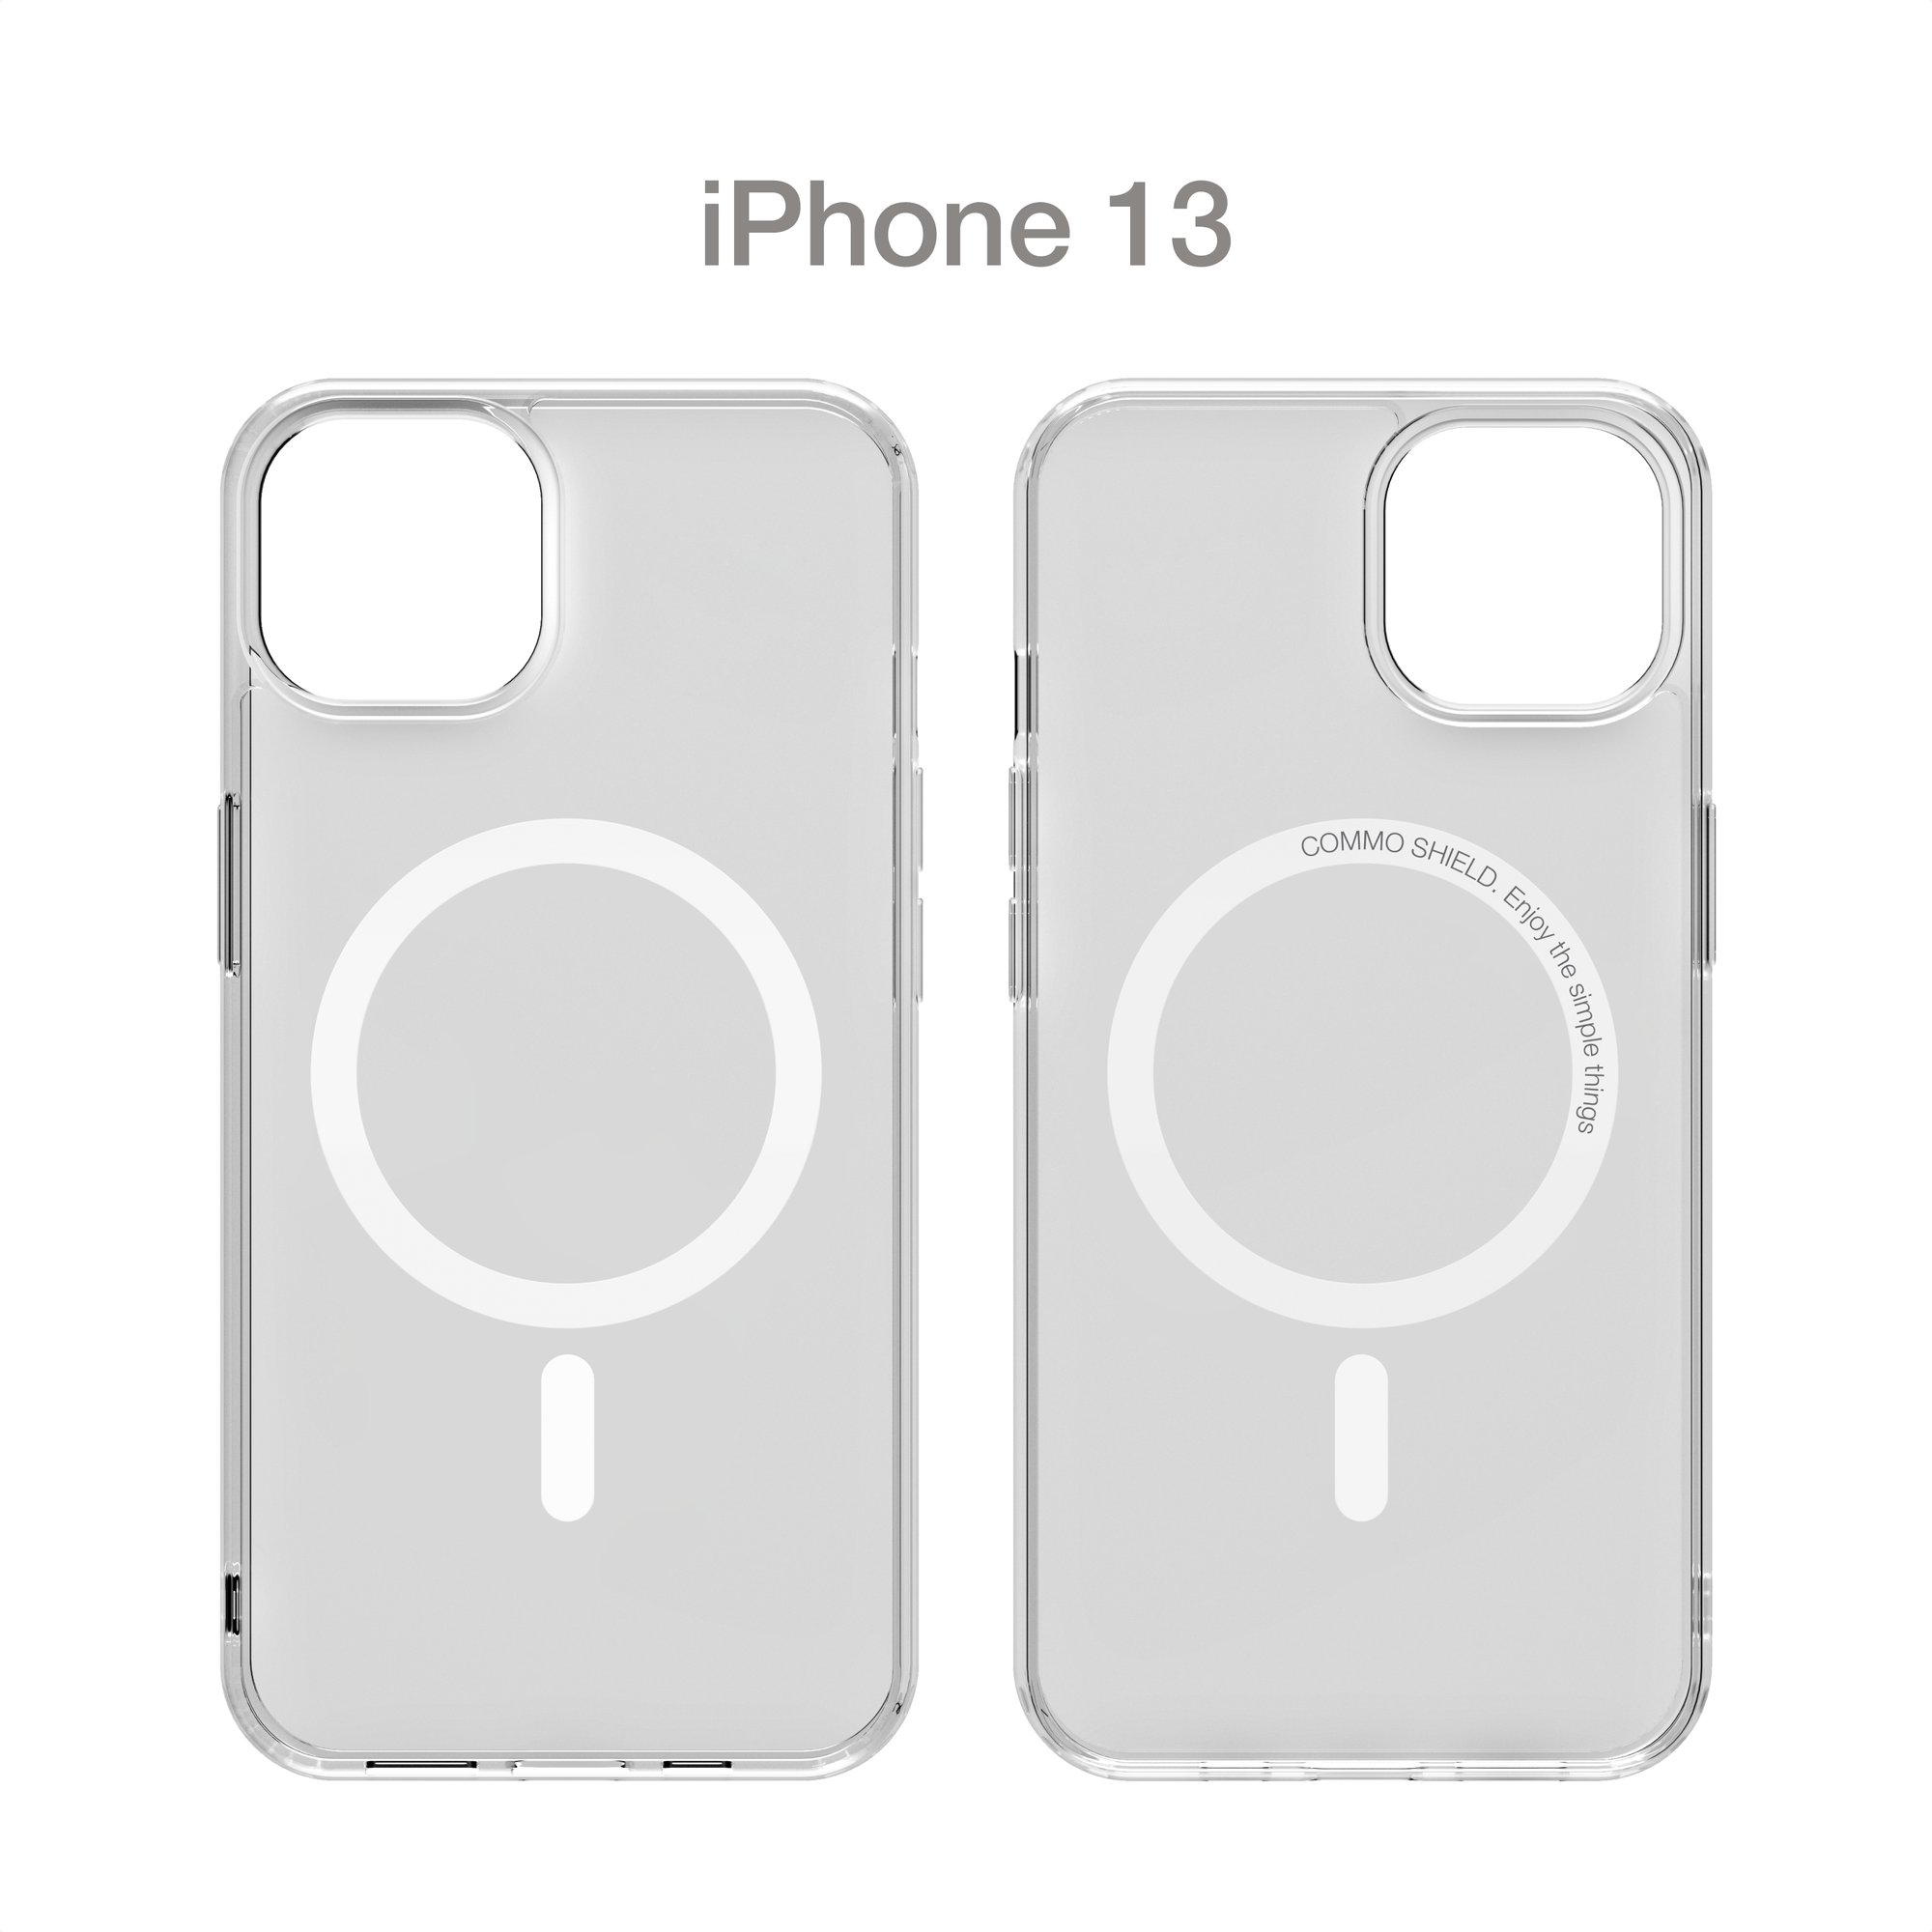 Прозрачный чехол COMMO Shield Case для iPhone 13 с поддержкой беспроводной зарядки